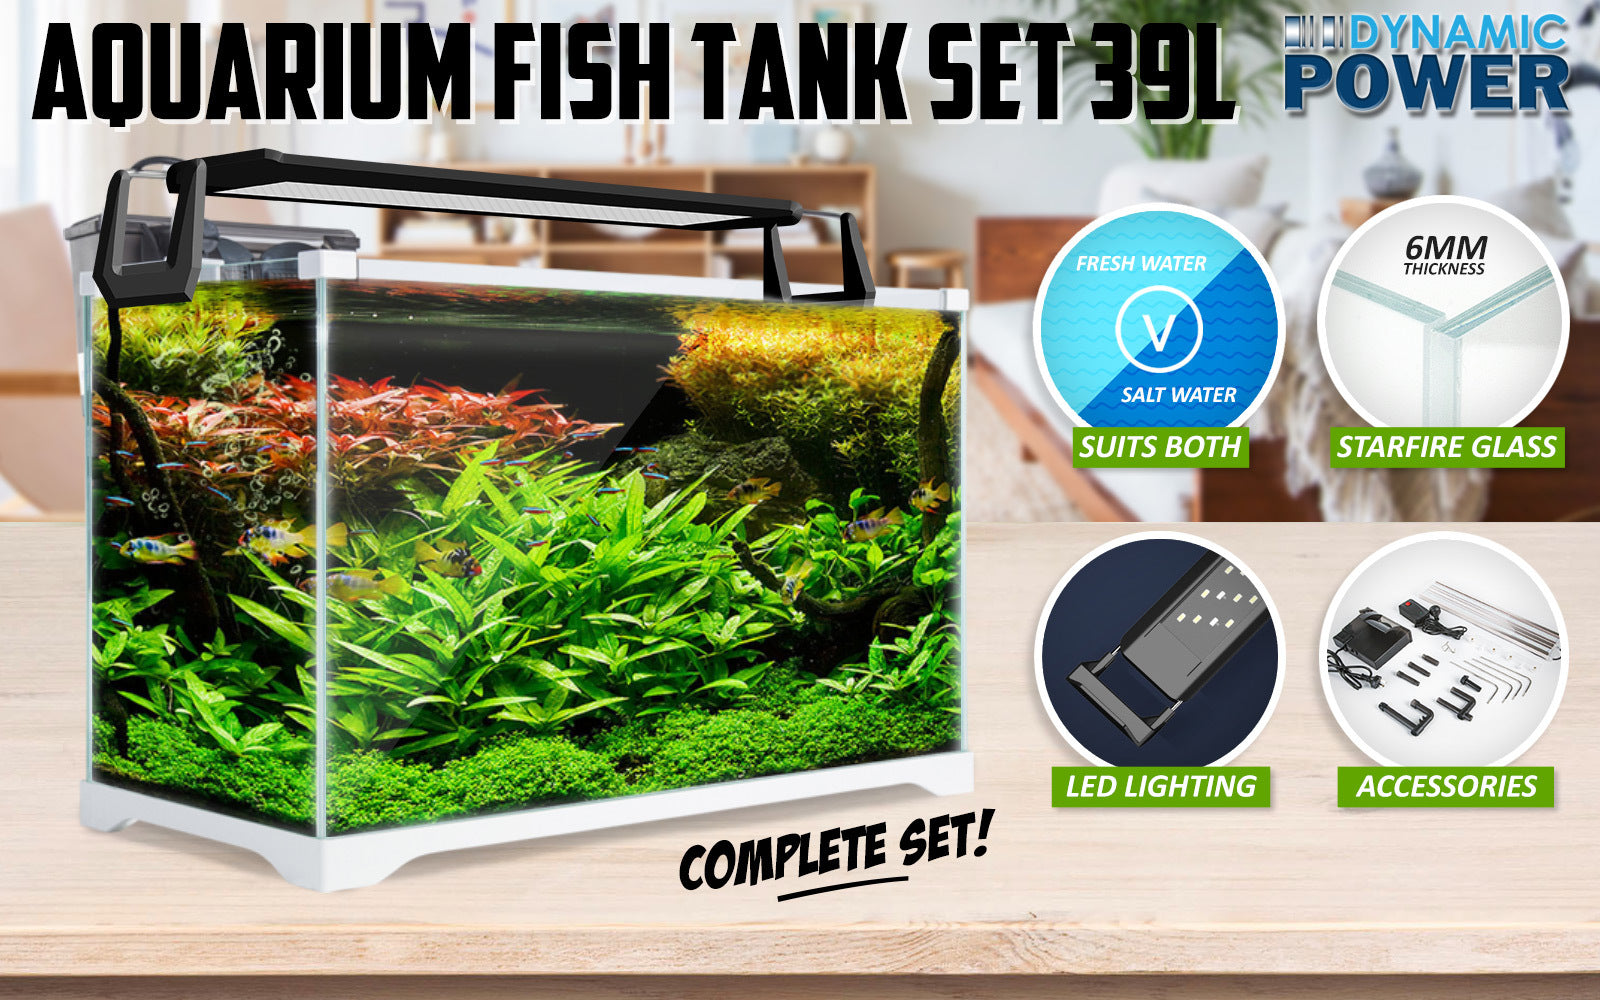 Aquarium Starfire Glass Fish Tank Set Filter Pump 39L